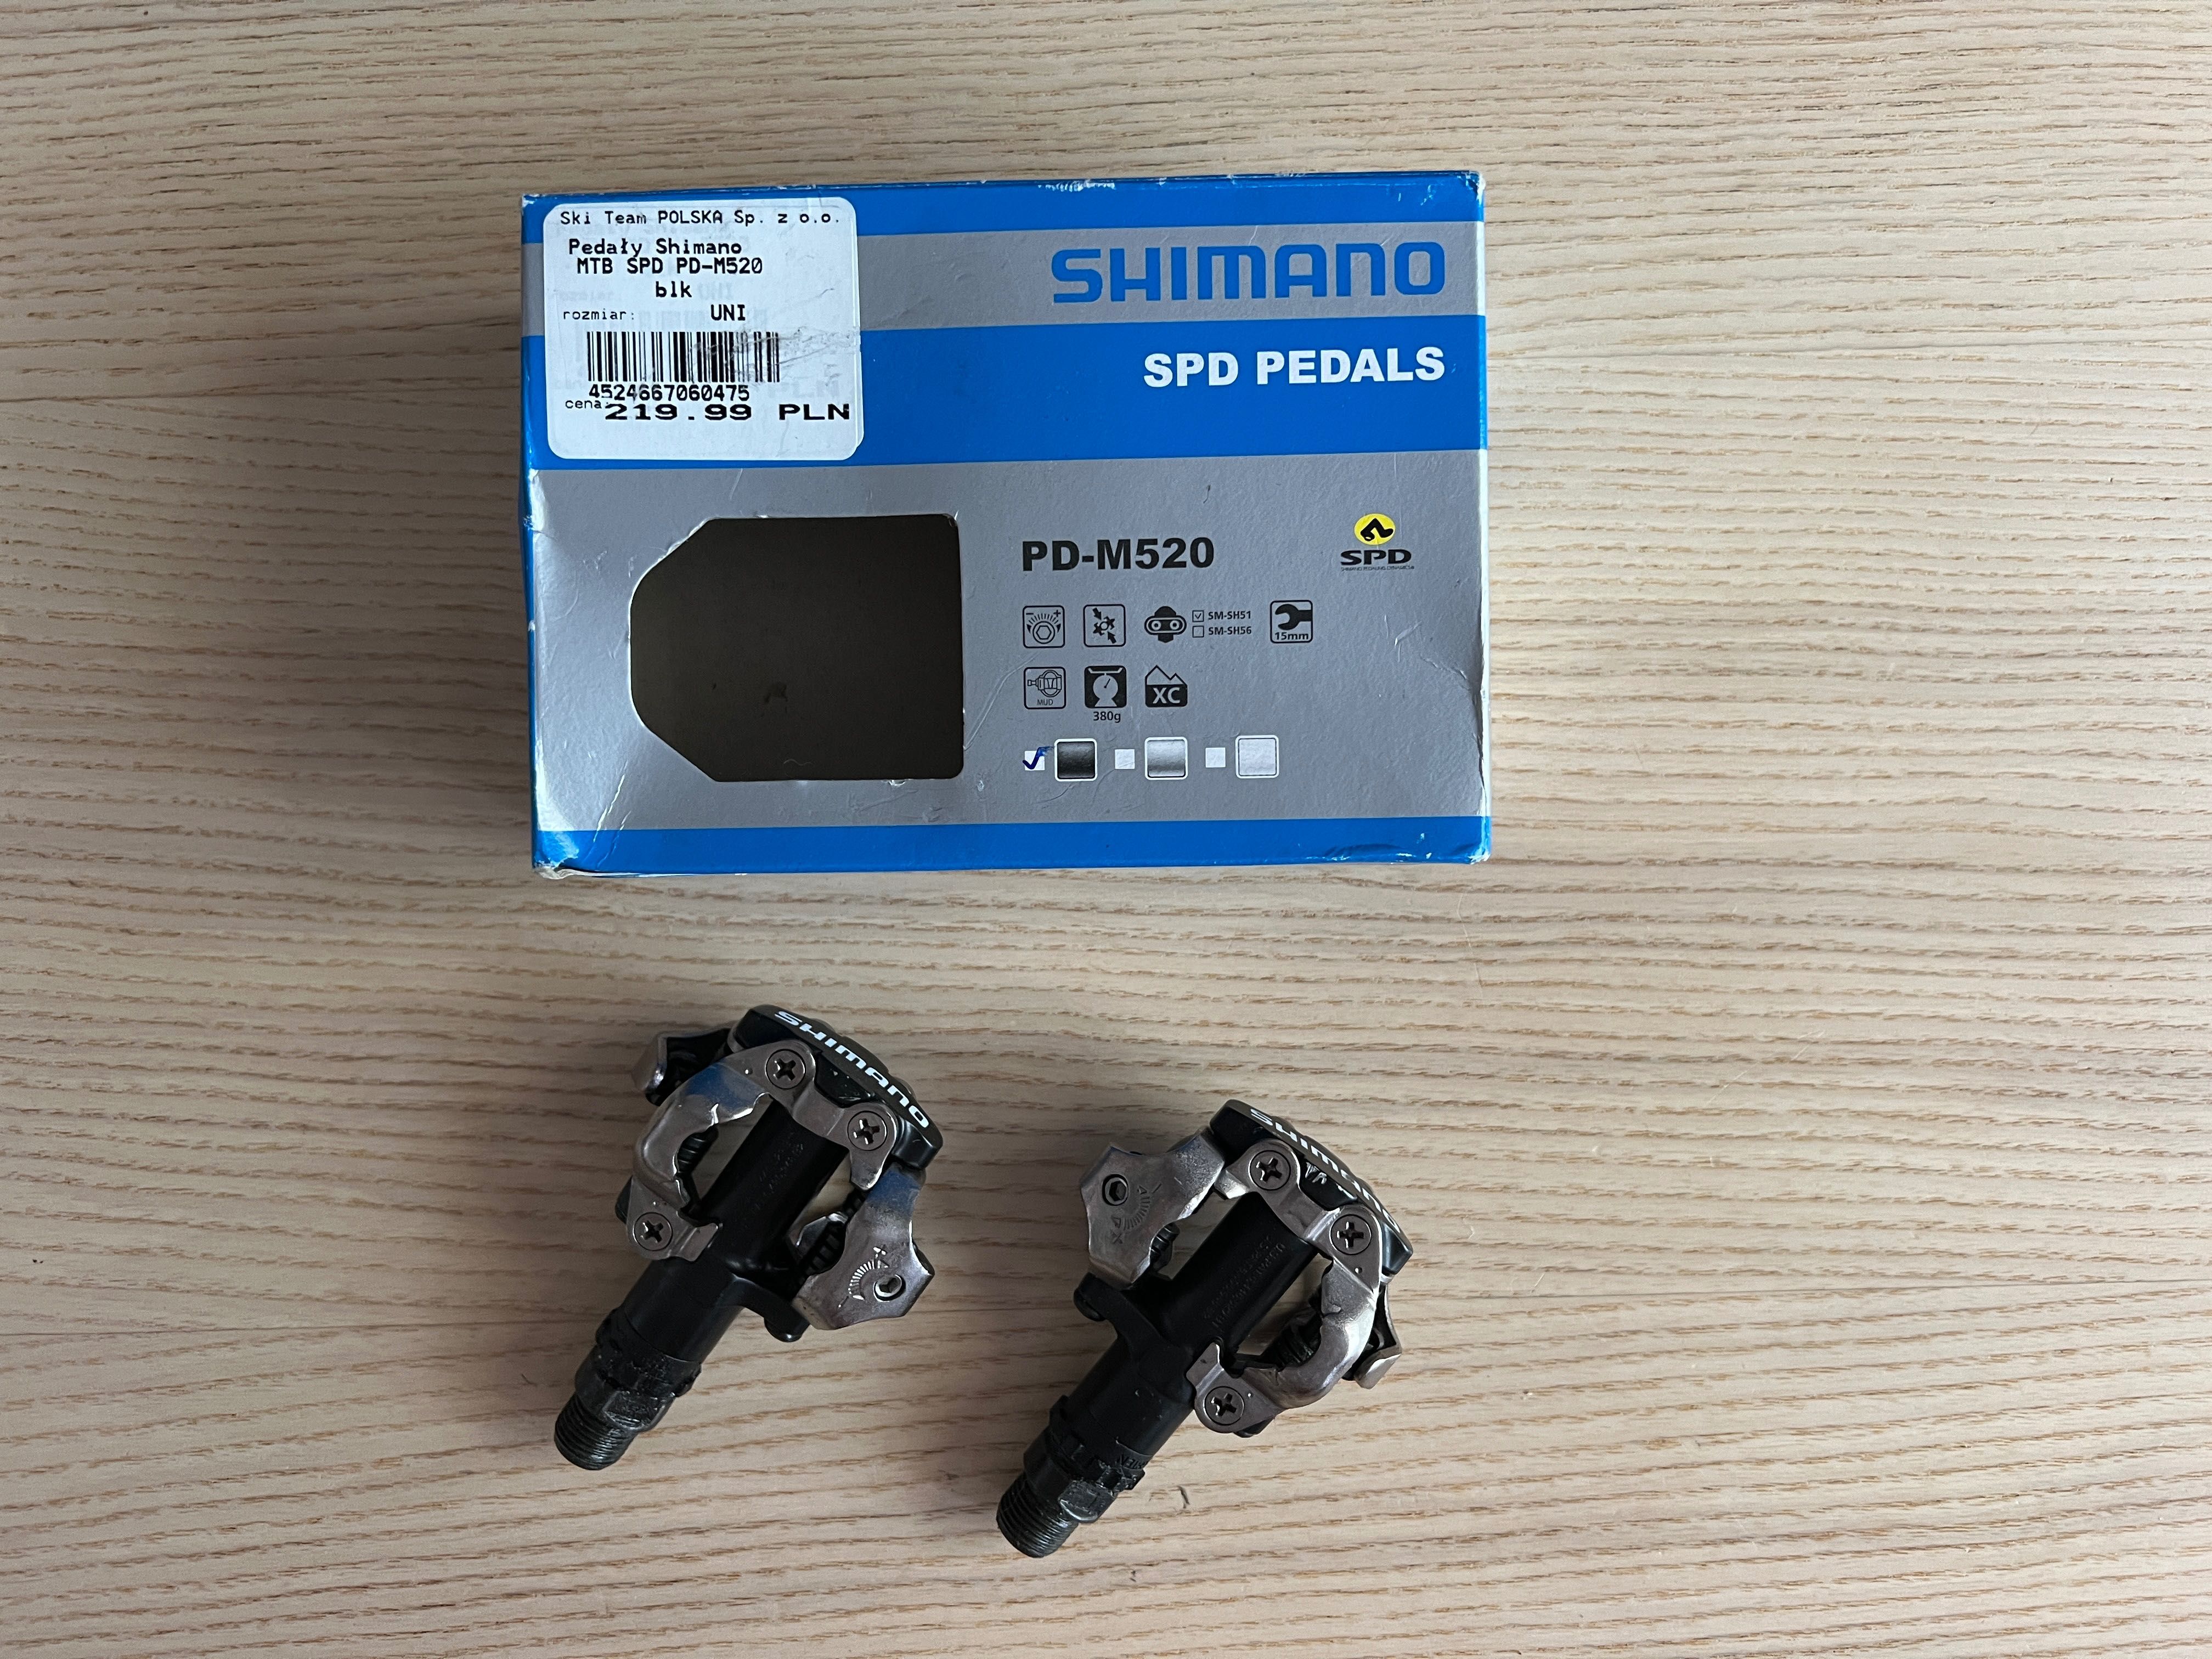 Pedały SPD Shimano PD-M520 - używane max 100 km - stand idealny